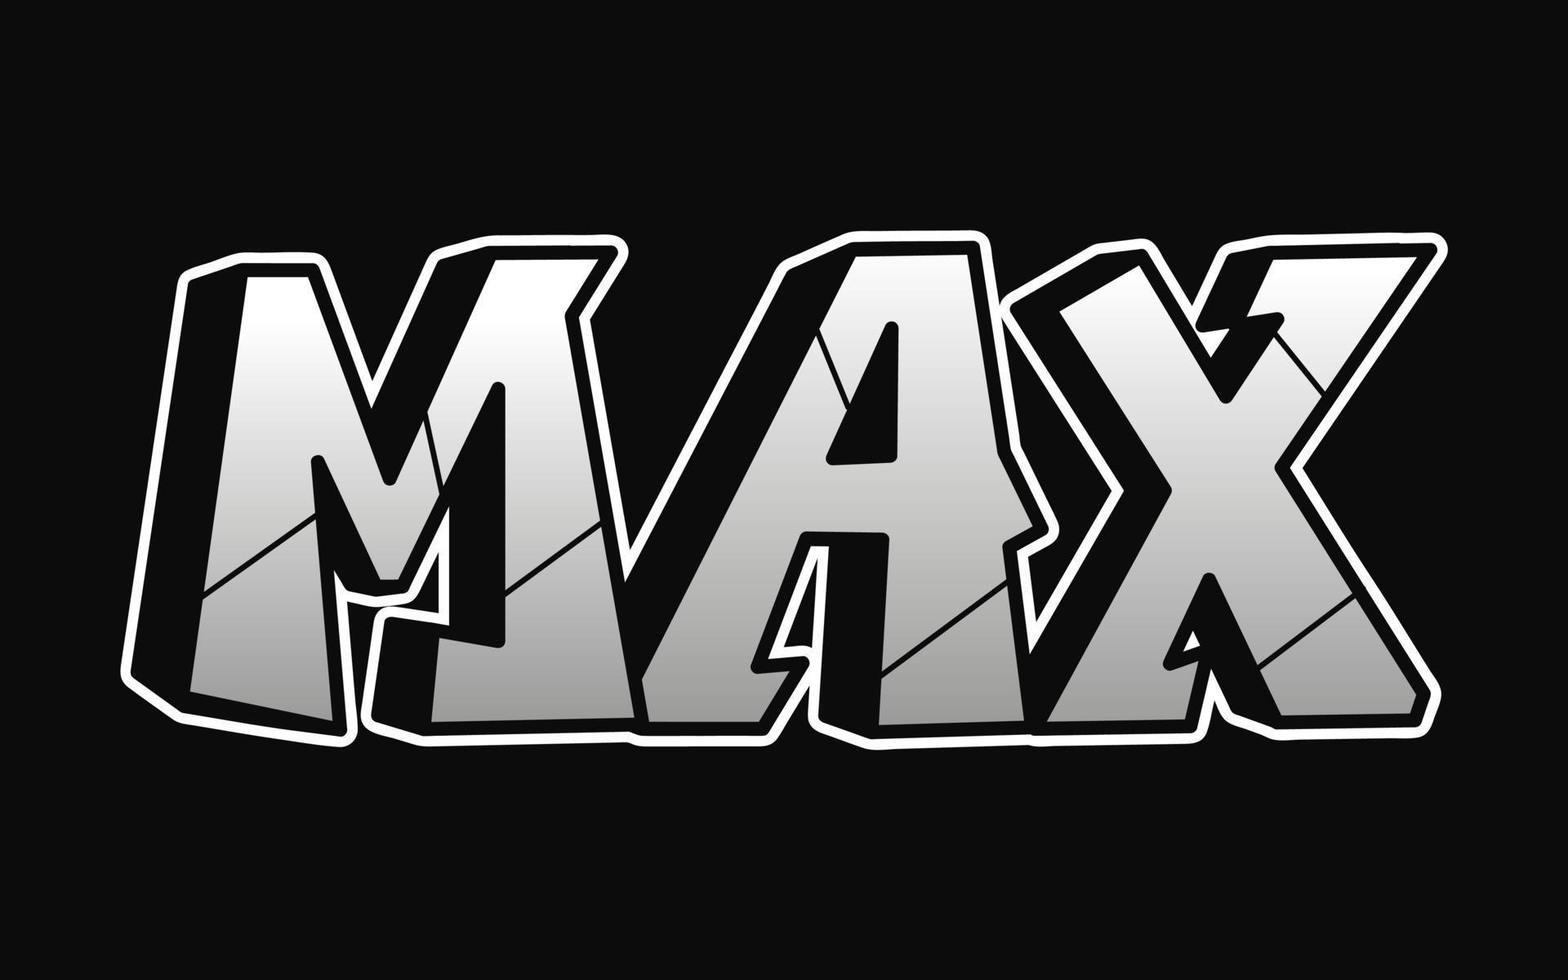 max mot graffiti style lettres.vector illustration de logo de dessin animé doodle dessinés à la main.funny cool max lettres, mode, impression de style graffiti pour t-shirt, concept d'affiche vecteur